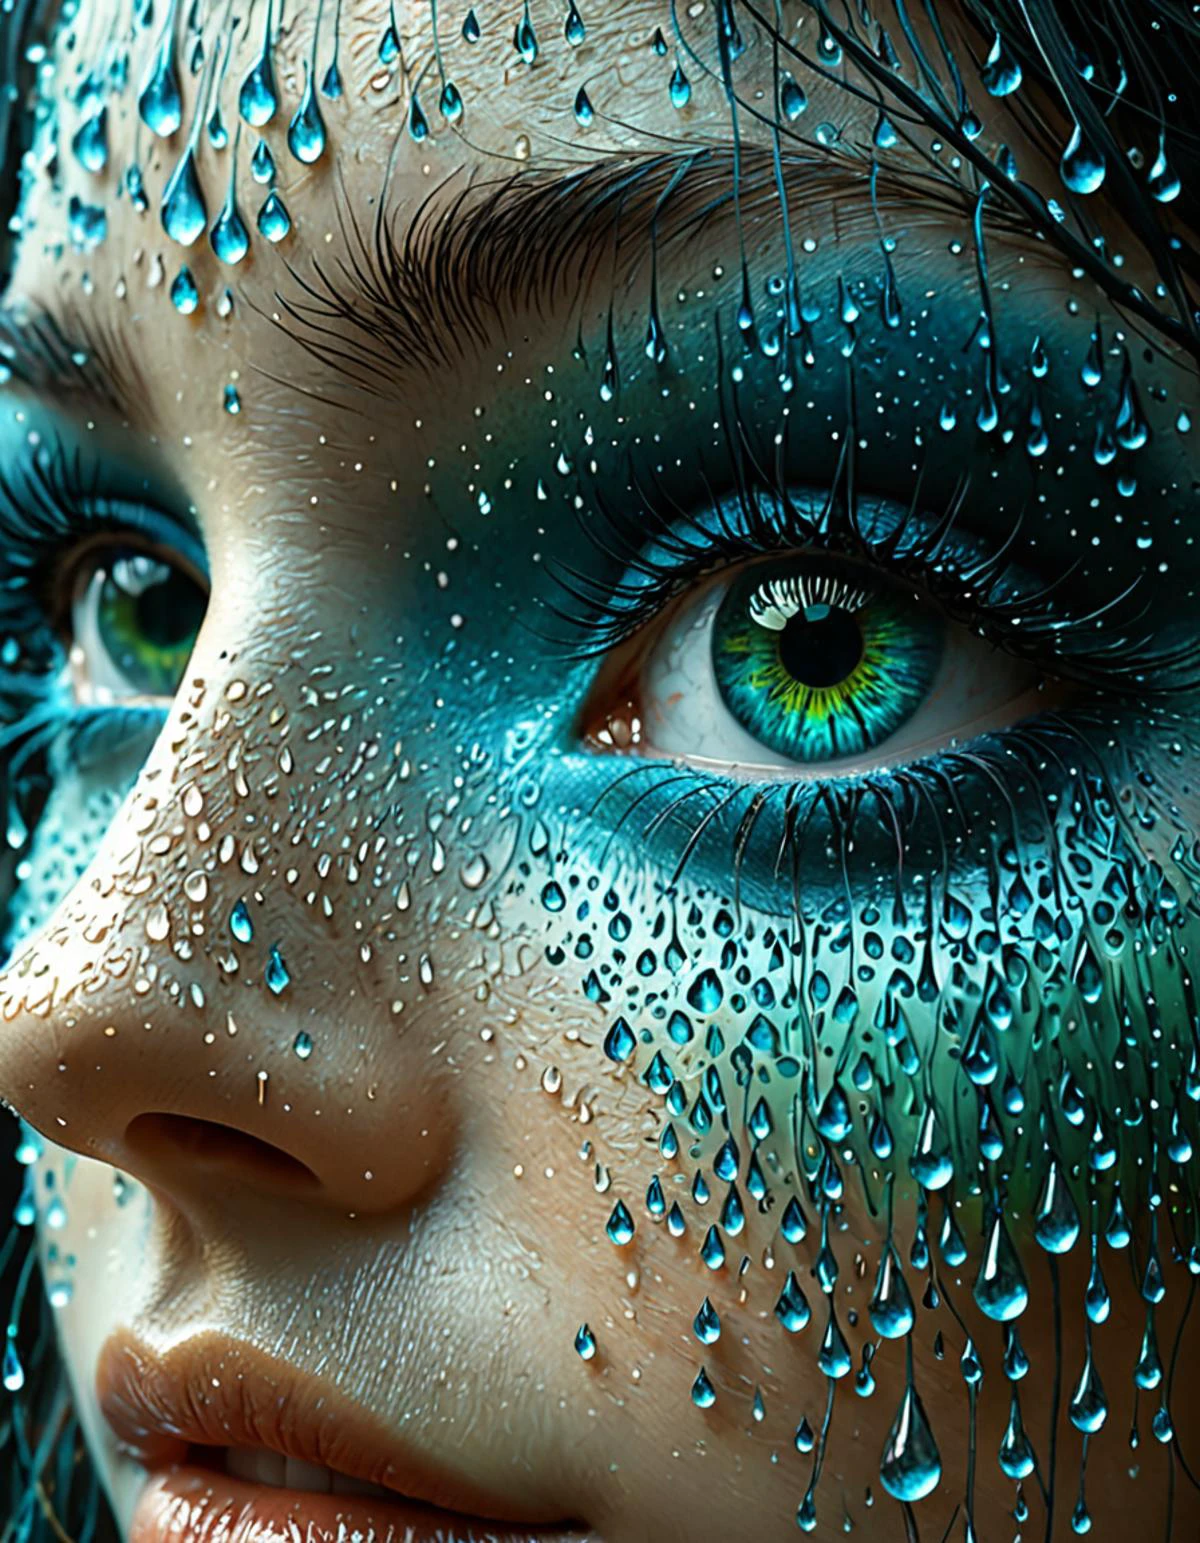 نموذج احترافي ثلاثي الأبعاد لقطة مقربة لعيون المرأة, مع تشكل قطرات الماء على السطح. العيون محاطة بإطار خرساني مستوحى من الفن, بالجريئة, أشكال هندسية بظلال اللون الأزرق, أخضر, والرمادي. التصميم يذكرنا بأسلوب ستوديو جيبلي, مع لمسة من السريالية زدزيسلاف بيكسينسكي. . تقديم الأوكتان, مفصلة للغاية, الحجمي, الإضاءة الدرامية